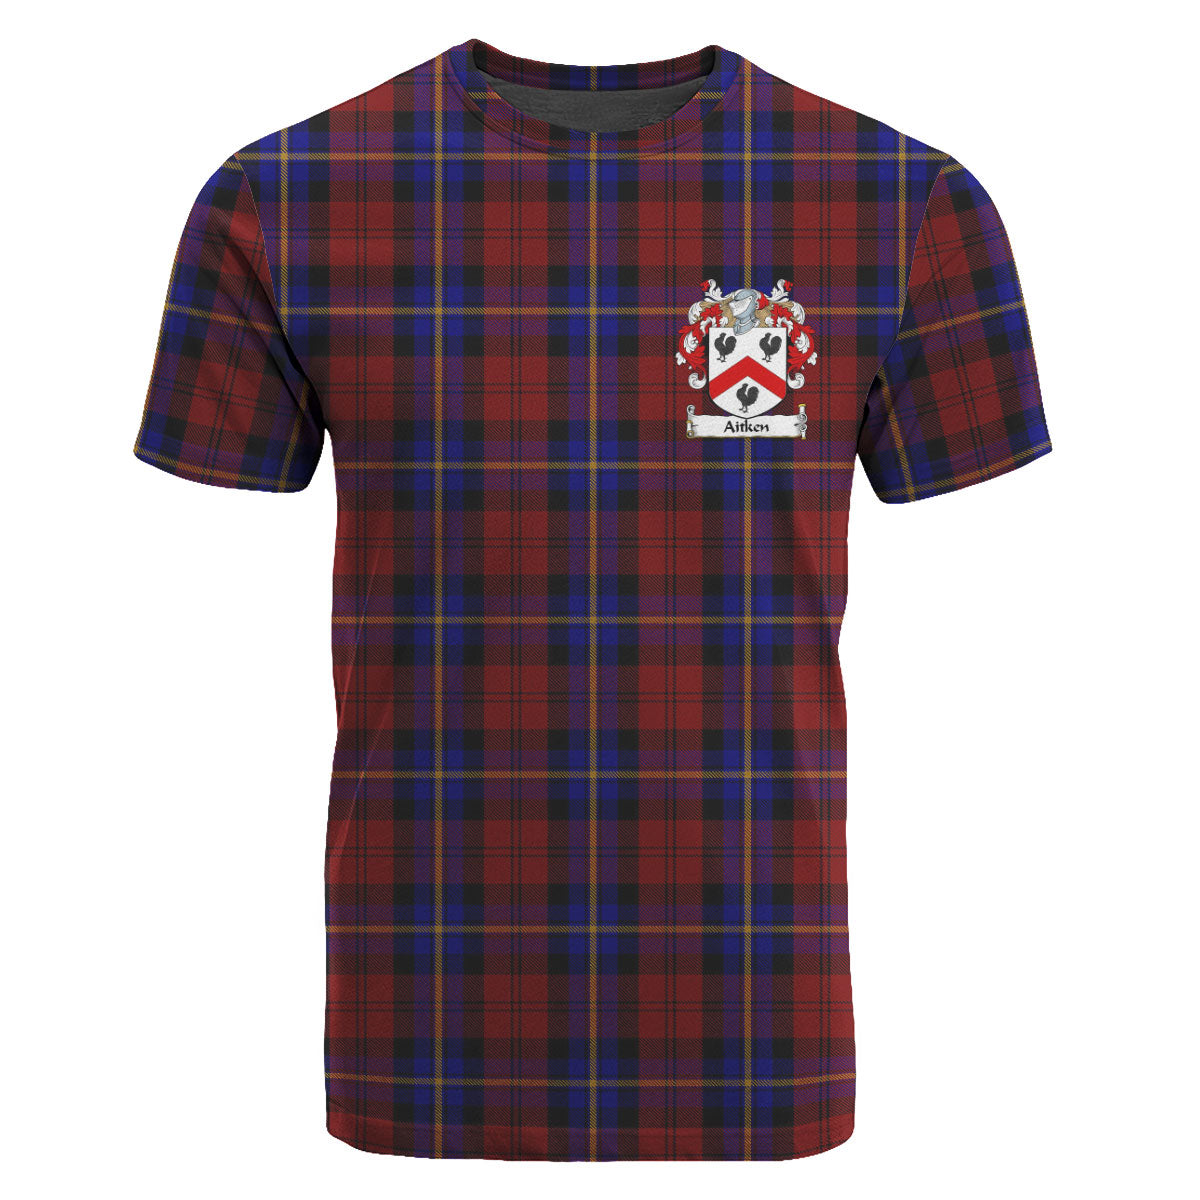 Aitken Tartan Crest T-shirt